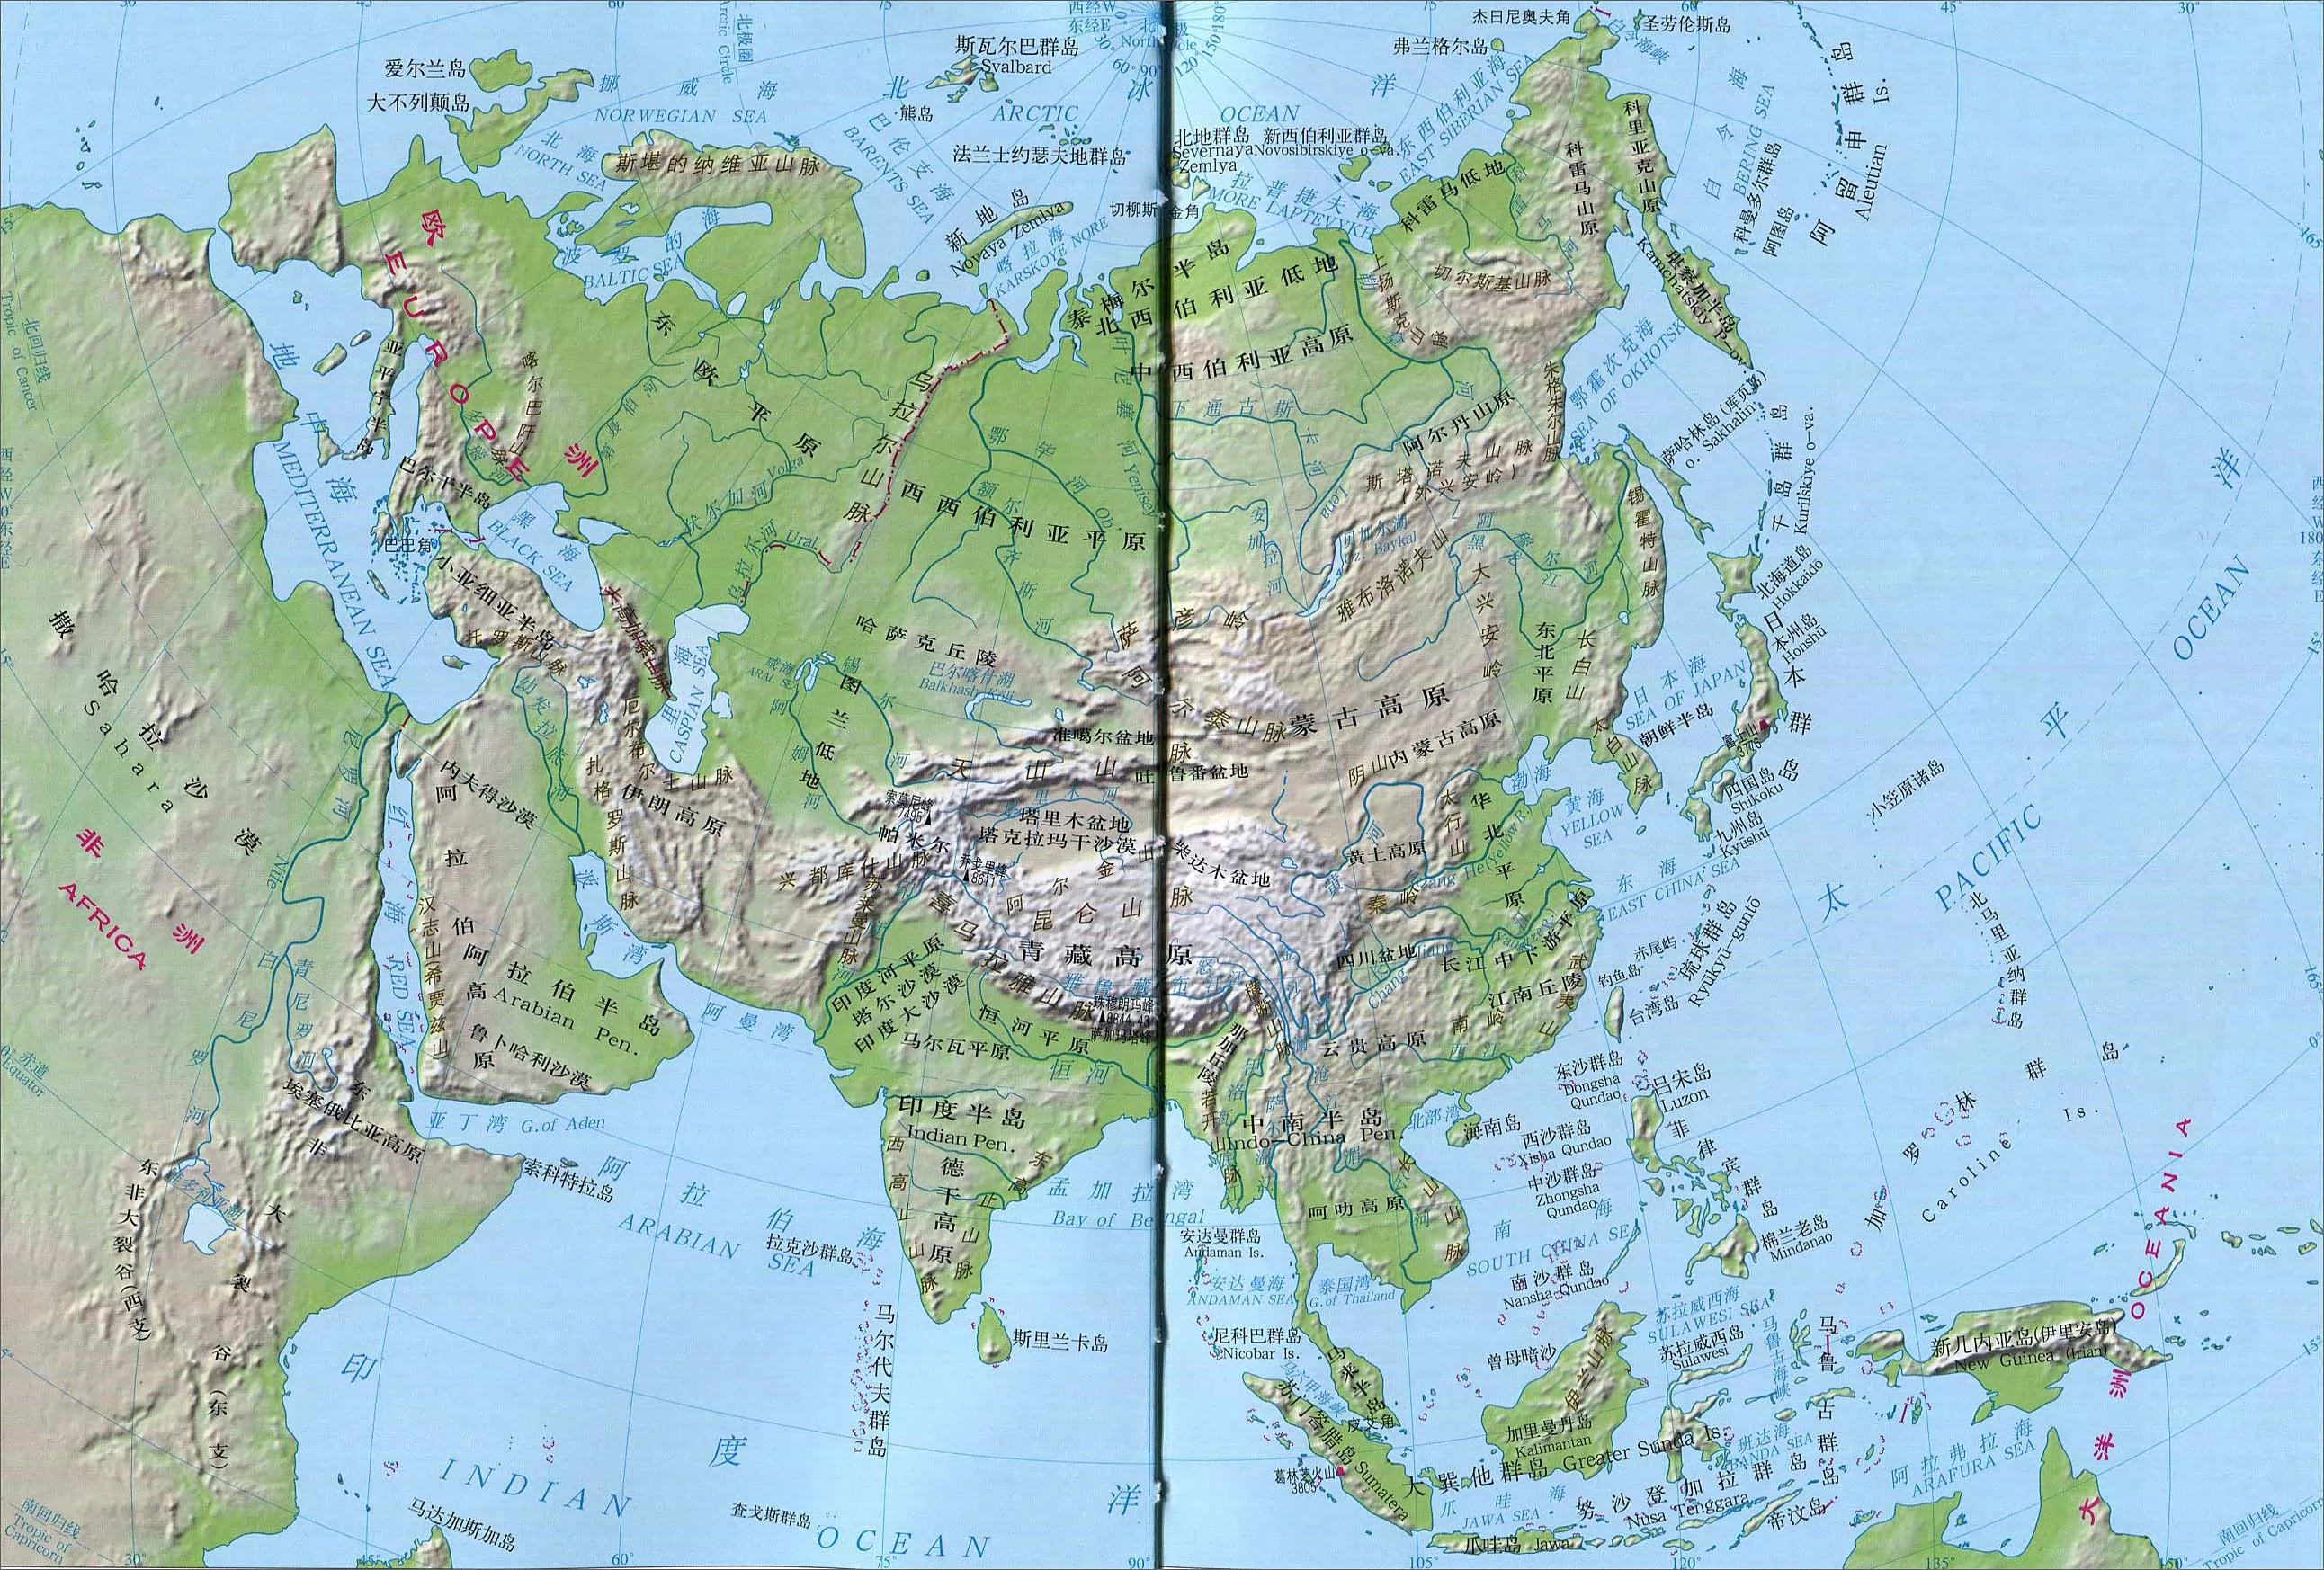 亚洲立体地形图 - 亚洲地图 - 地理教师网